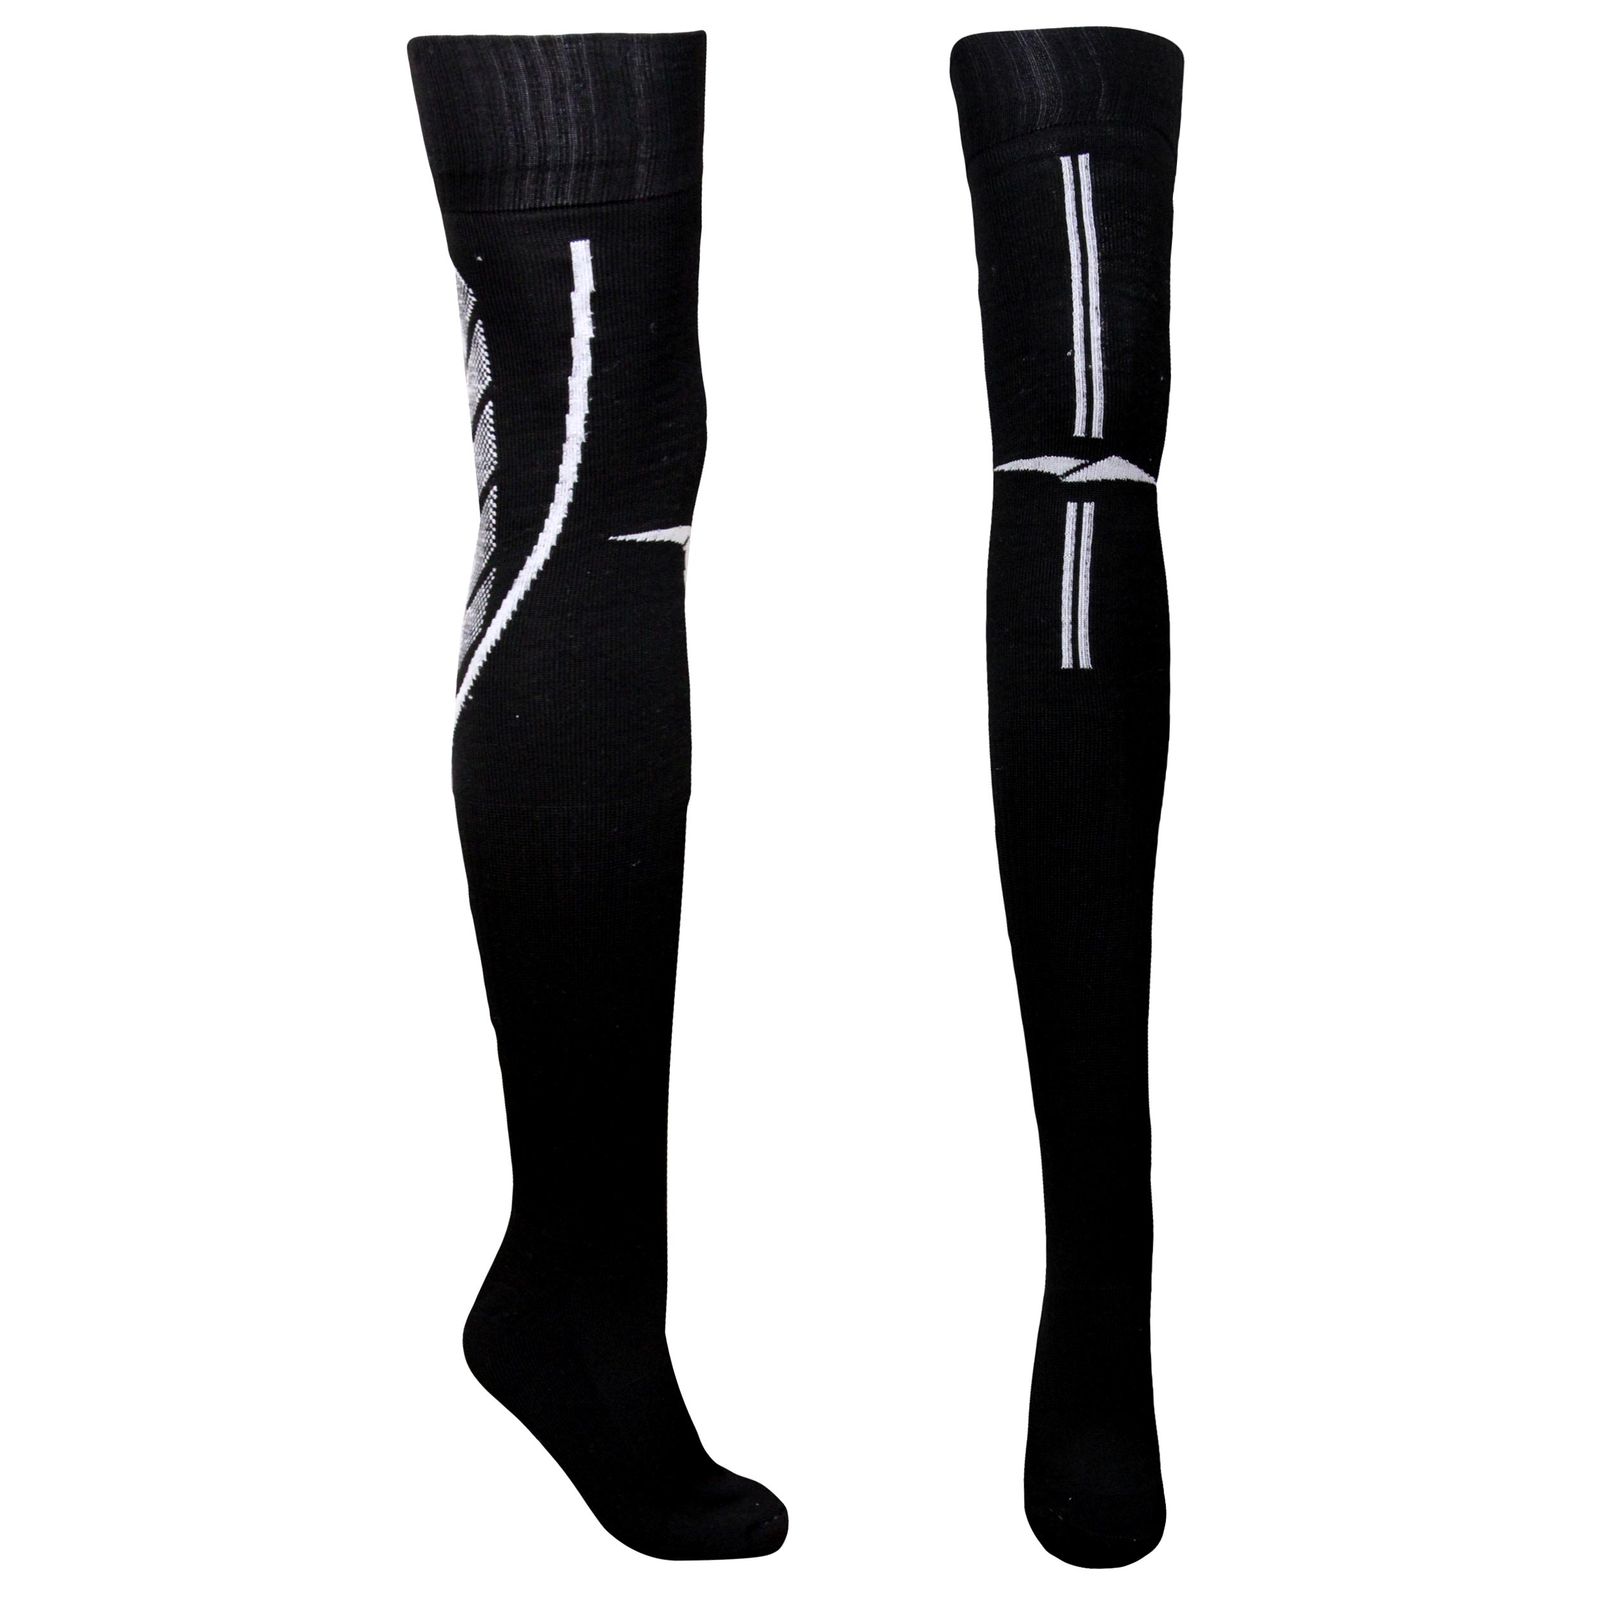                          جوراب ورزشی ساق بلند مردانه ماییلدا مدل کف حوله ای کد 4187 رنگ مشکی -  - 1